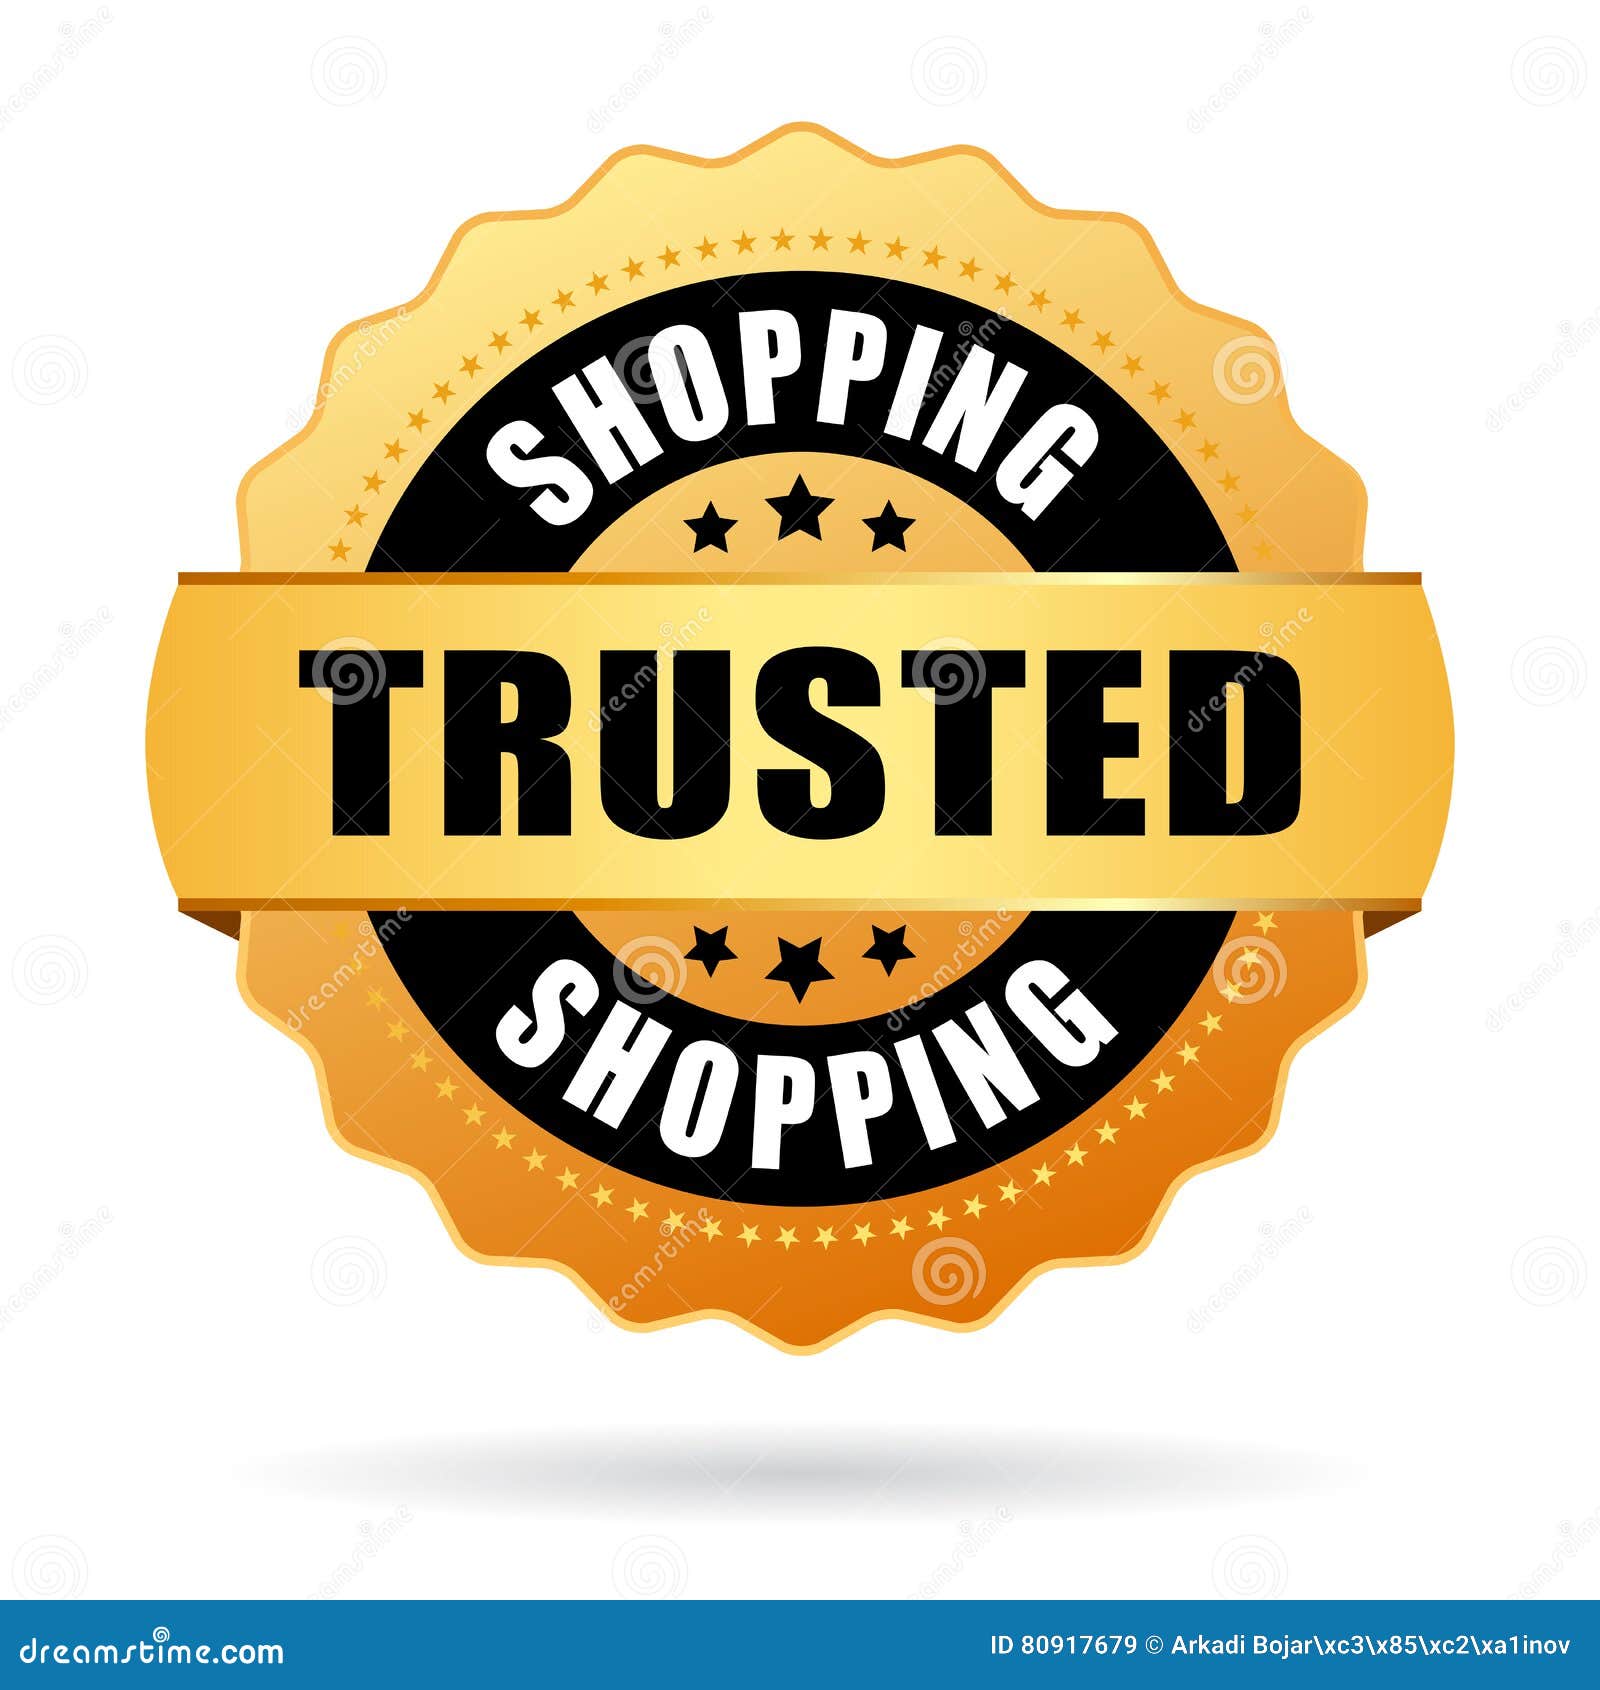 trusted shopping emblem